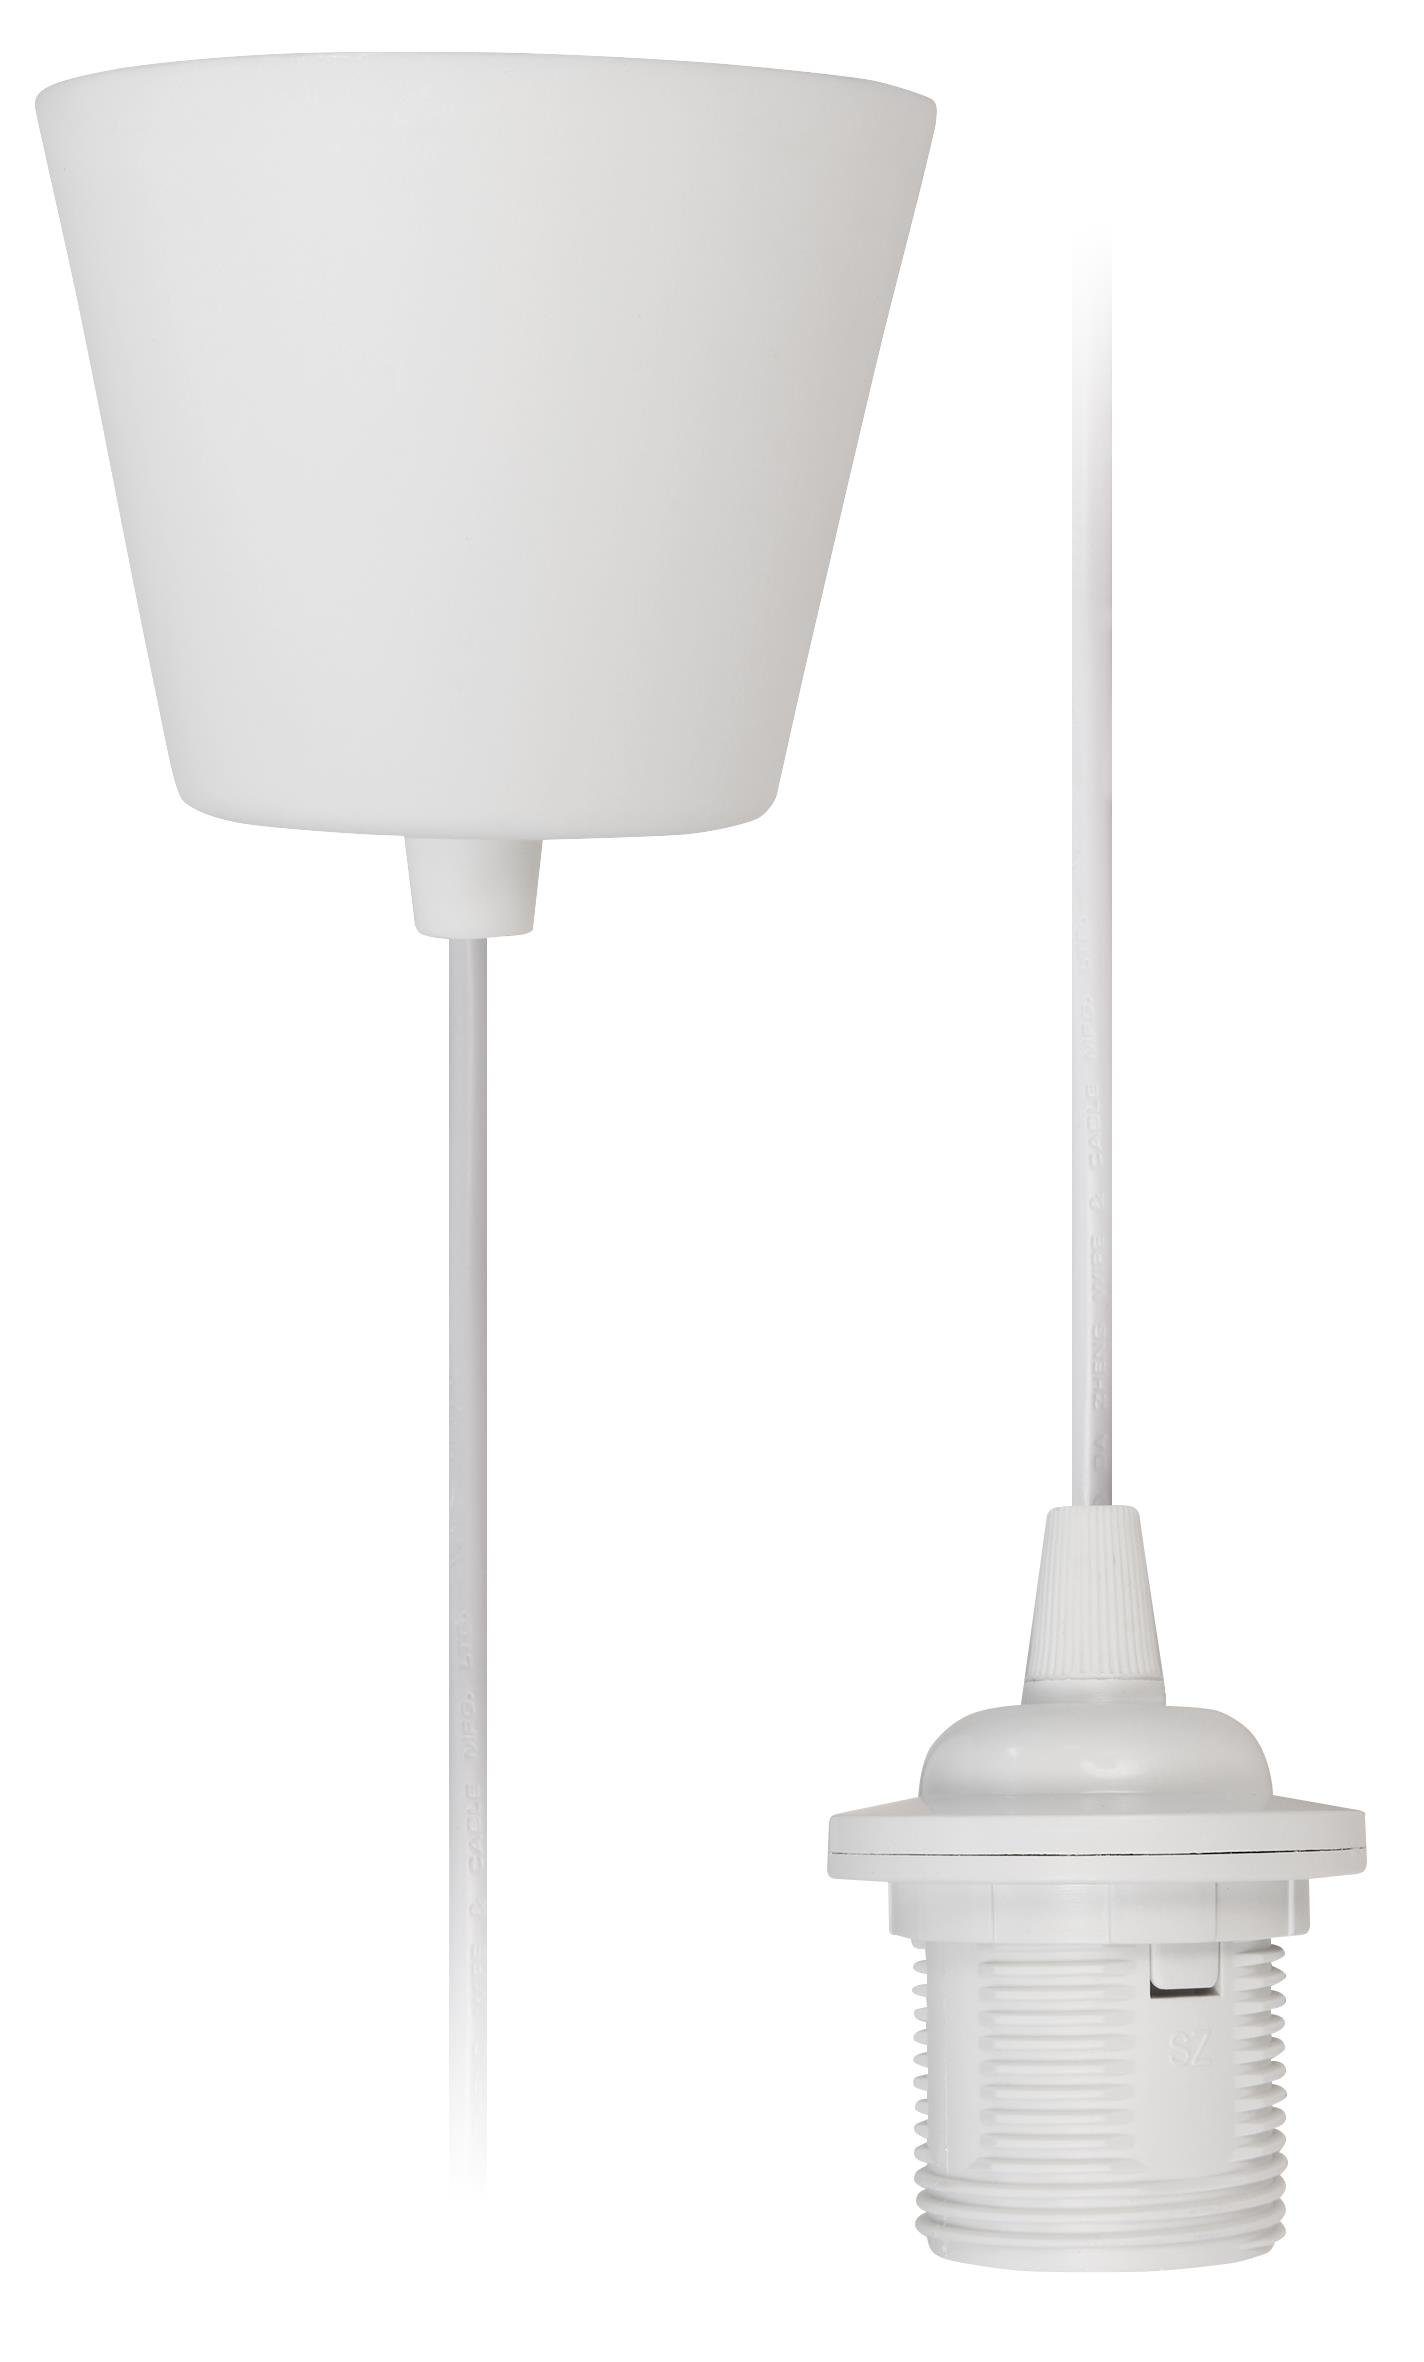 McShine Lichtschalter Lampenaufhängung McShine, E27 Fassung, weiß, 230V, 1,2m Kabel